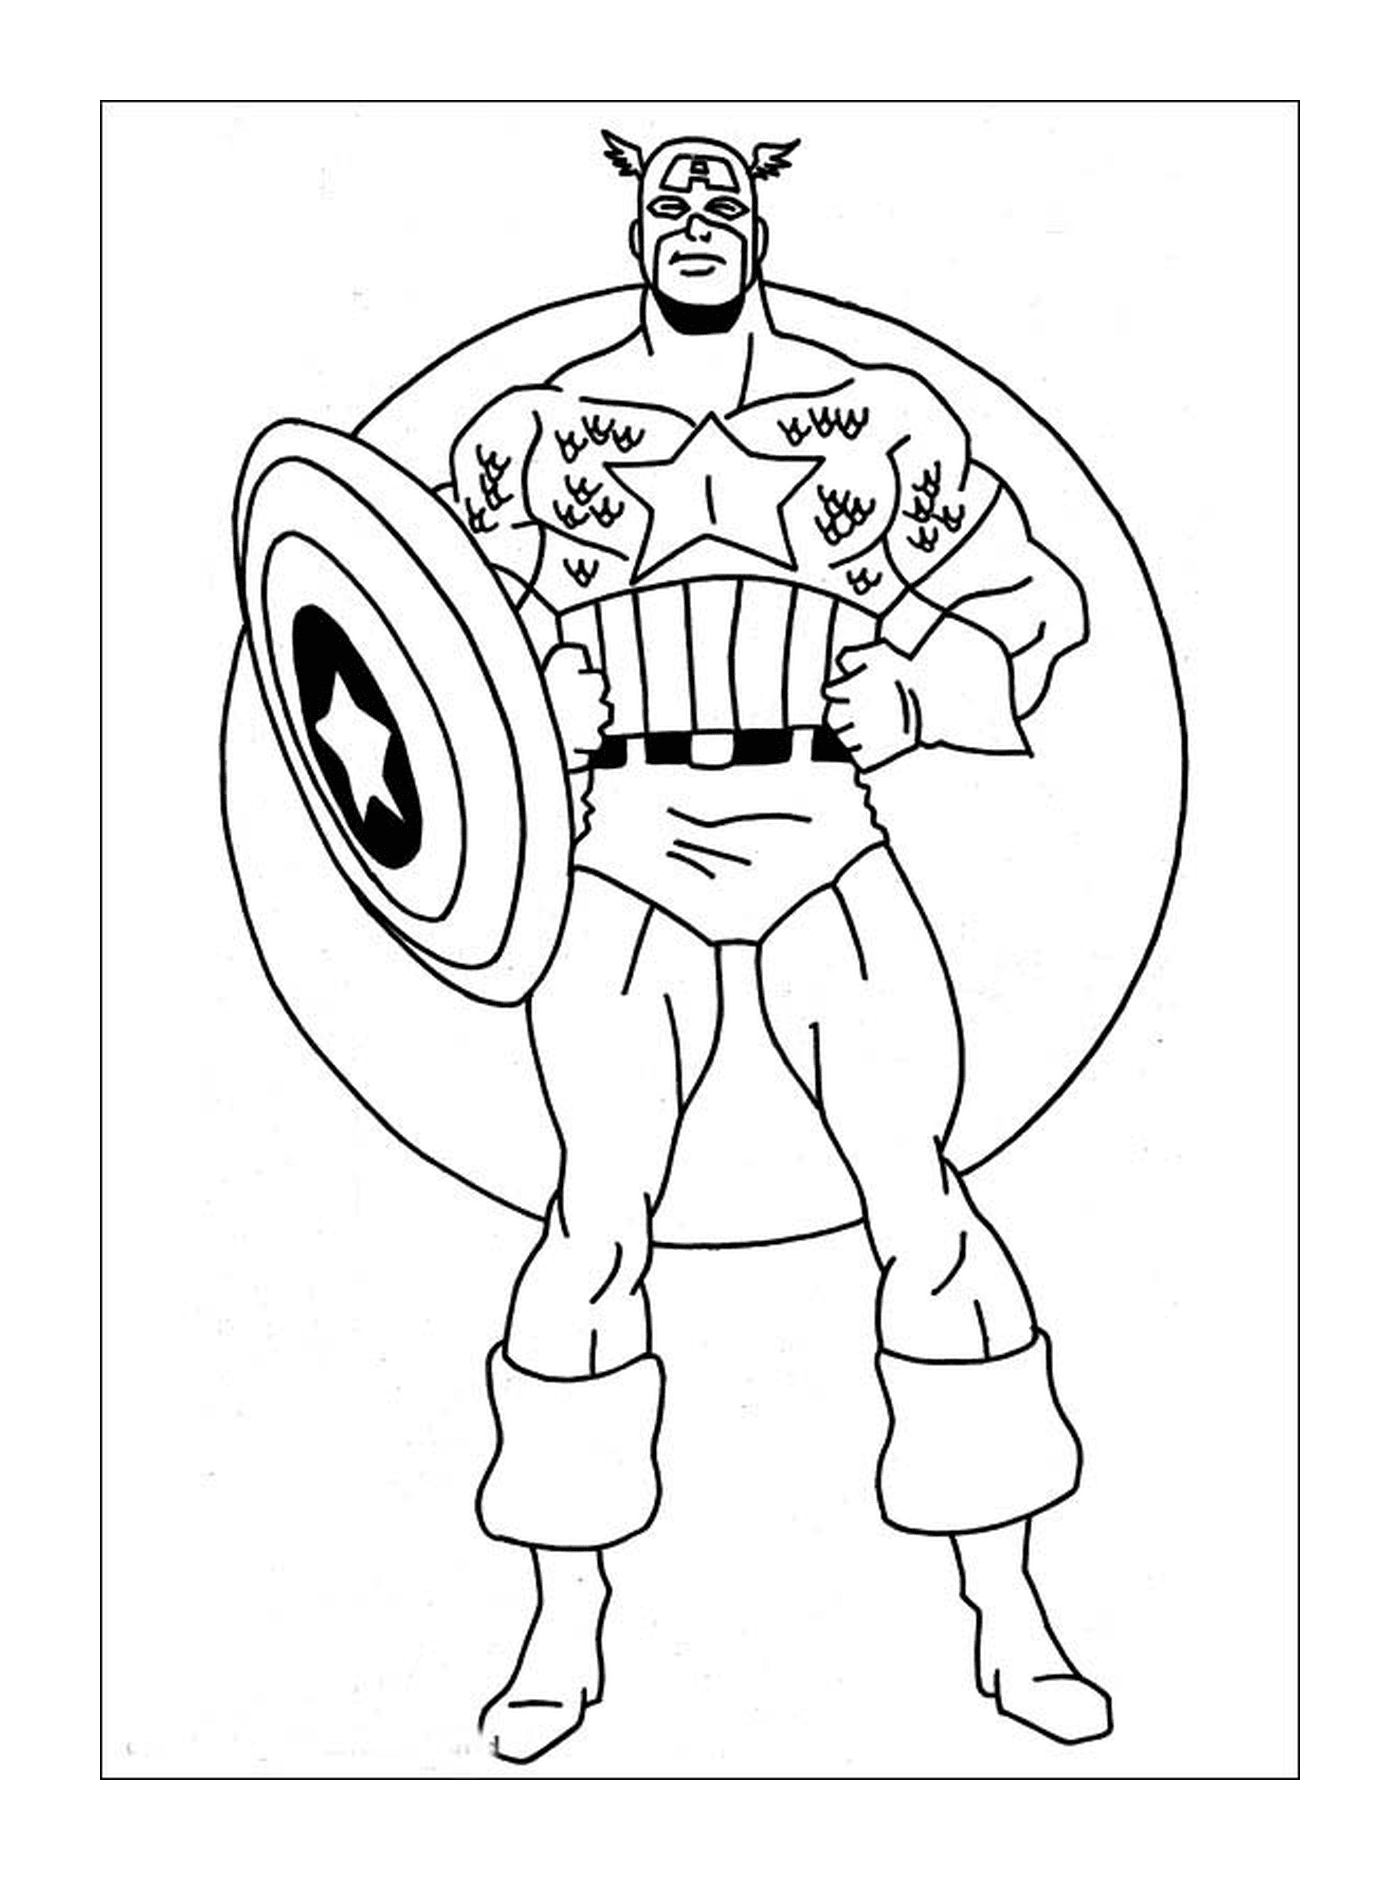  Una imagen del Capitán América cautivante 